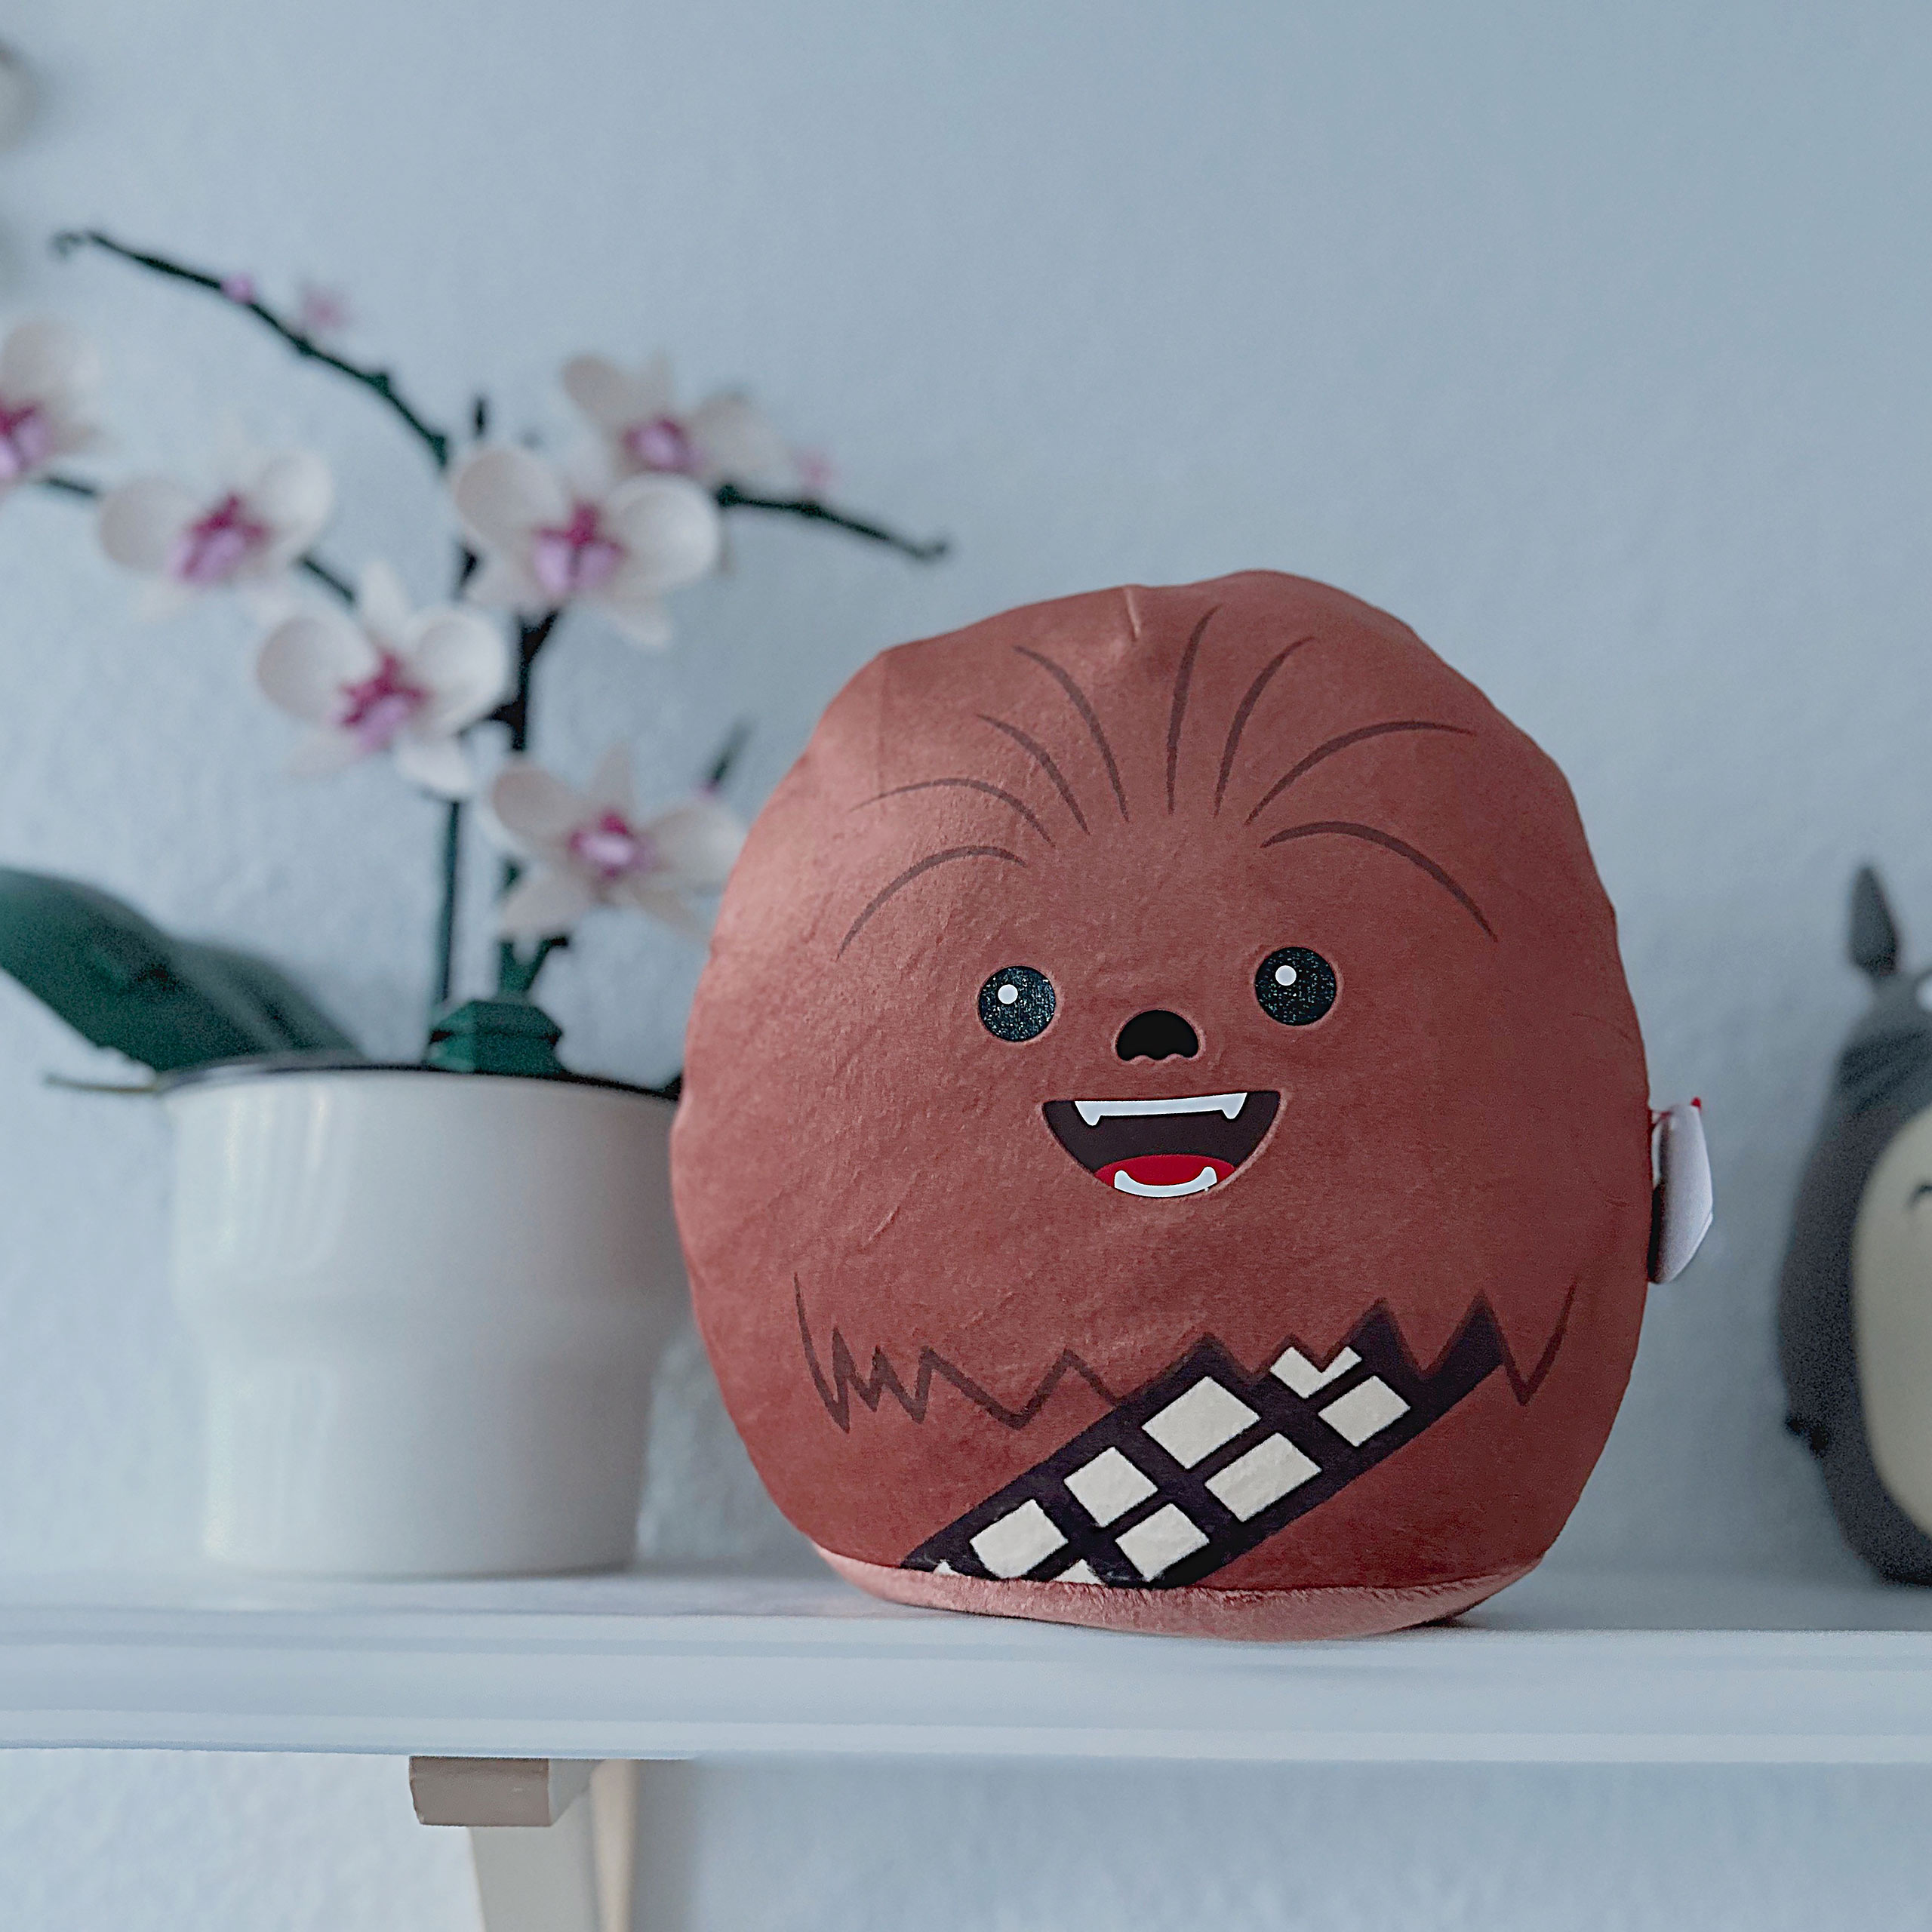 Chewbacca Squishy Beanies Plush Pillow 20cm - Star Wars